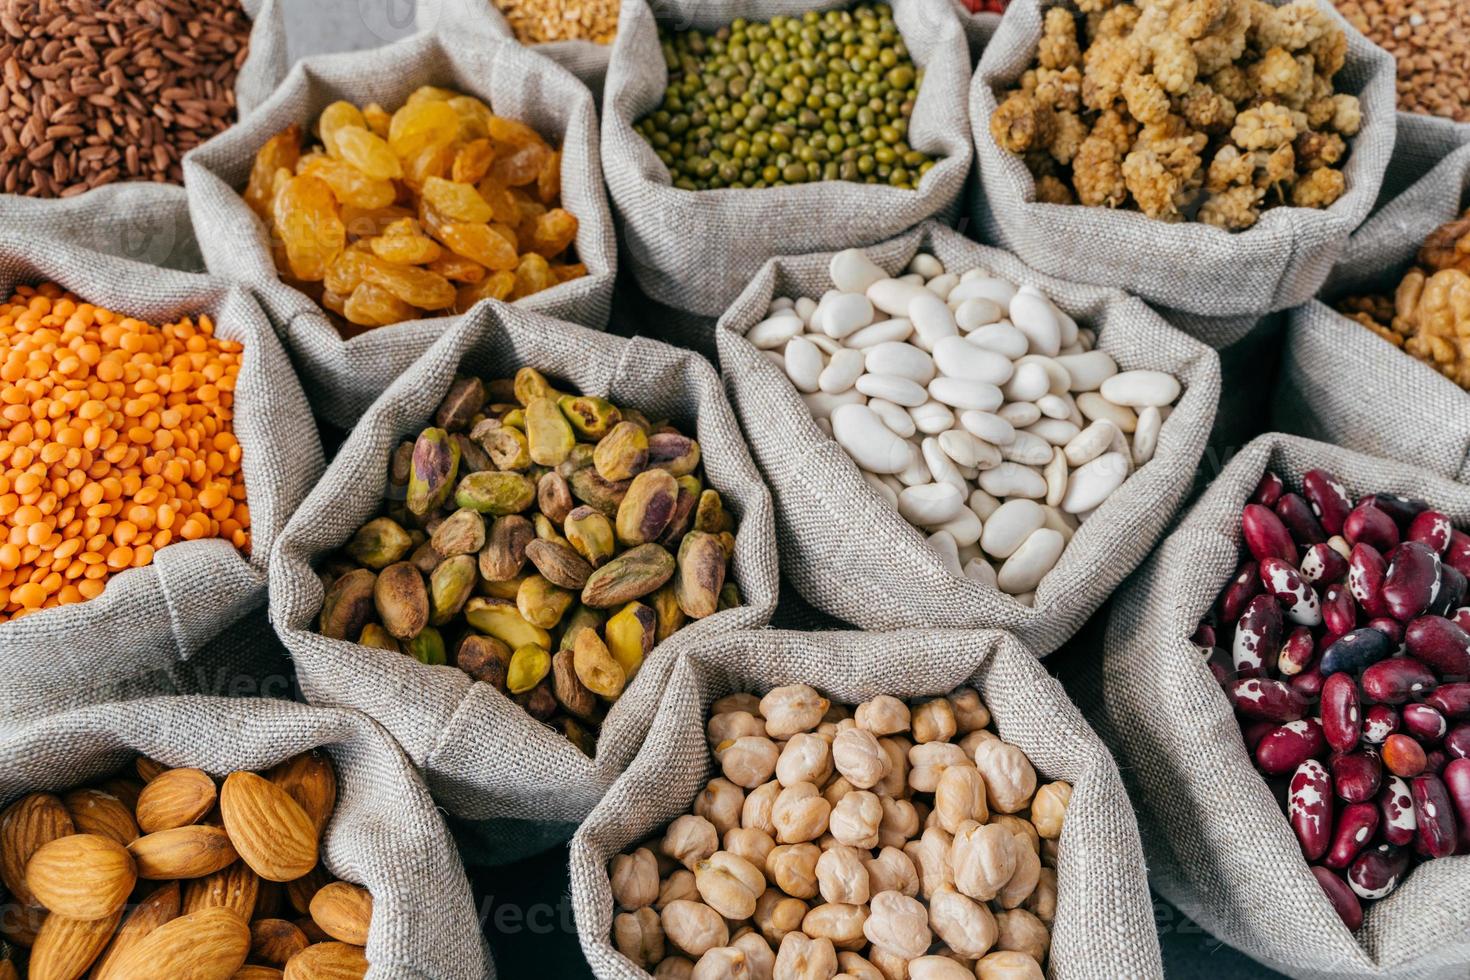 divers types de fruits secs et de céréales au marché des agriculteurs. haricot mungo, amande, mûre, pois chiches, raisins secs. photo en gros plan